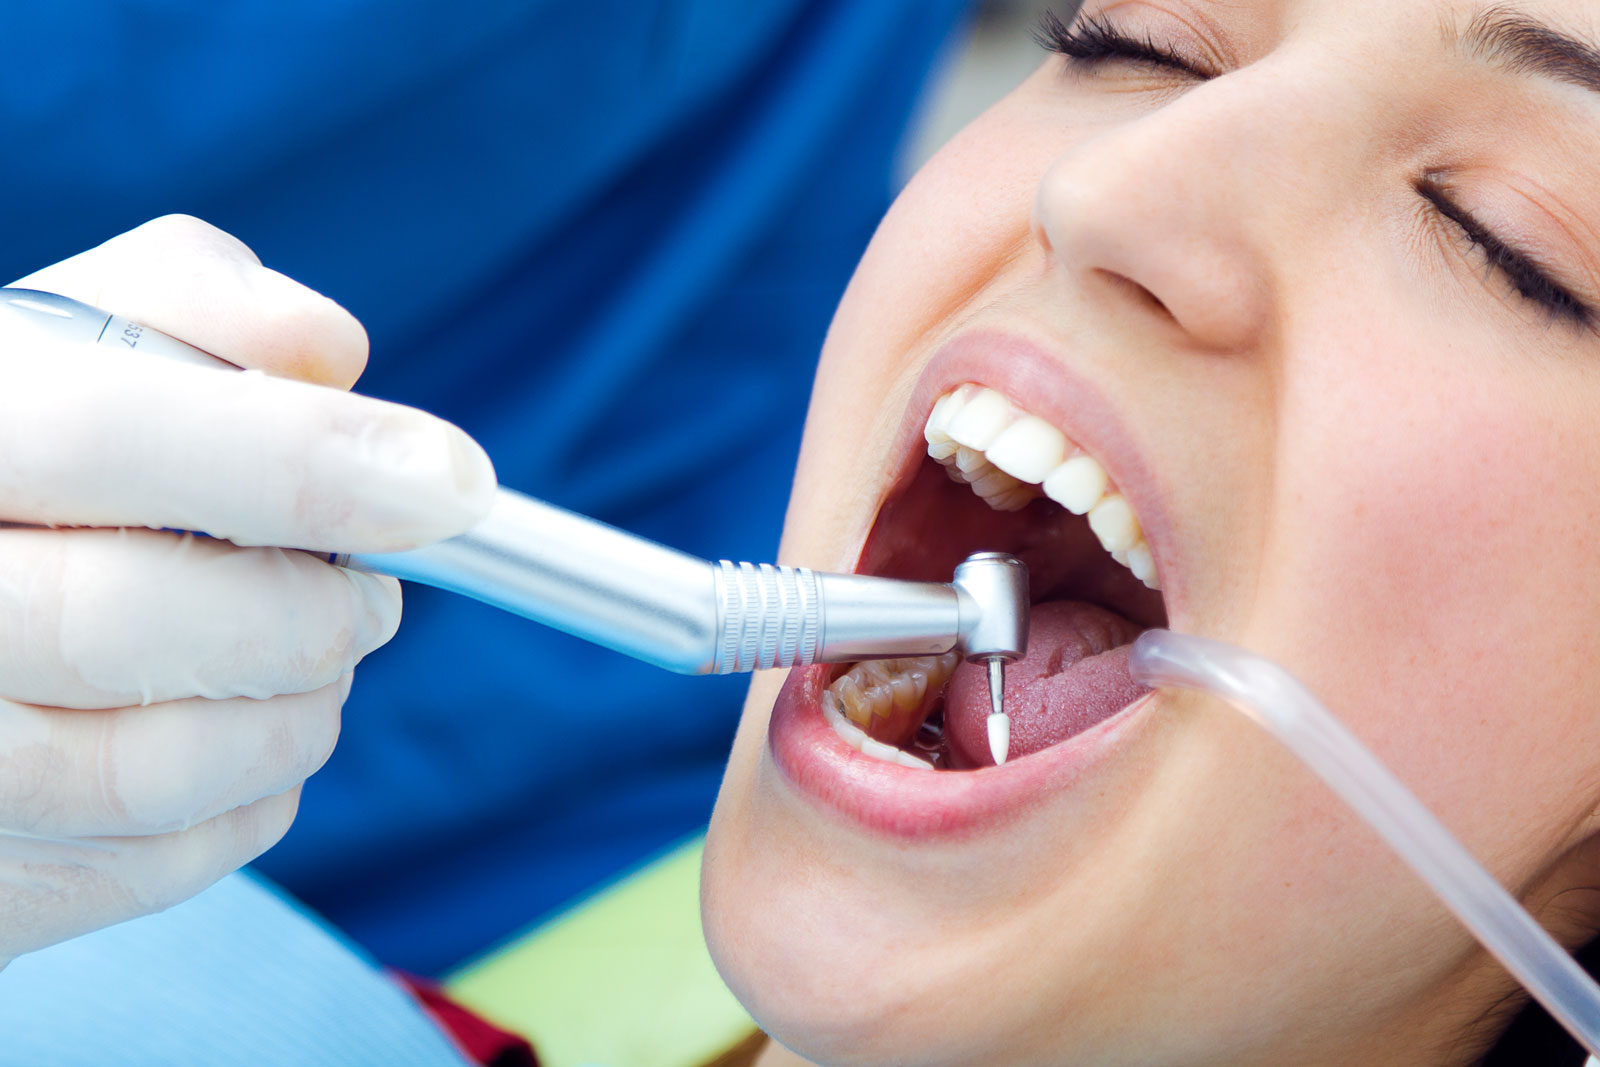 Pacjenci często pytają nas, czy to prawda, że aparat ortodontyczny może być winien pogorszeniu się stanu jamy ustnej. Jeśli jesteś ciekaw odpowiedzi, to koniecznie przeczytaj nasz artykuł.